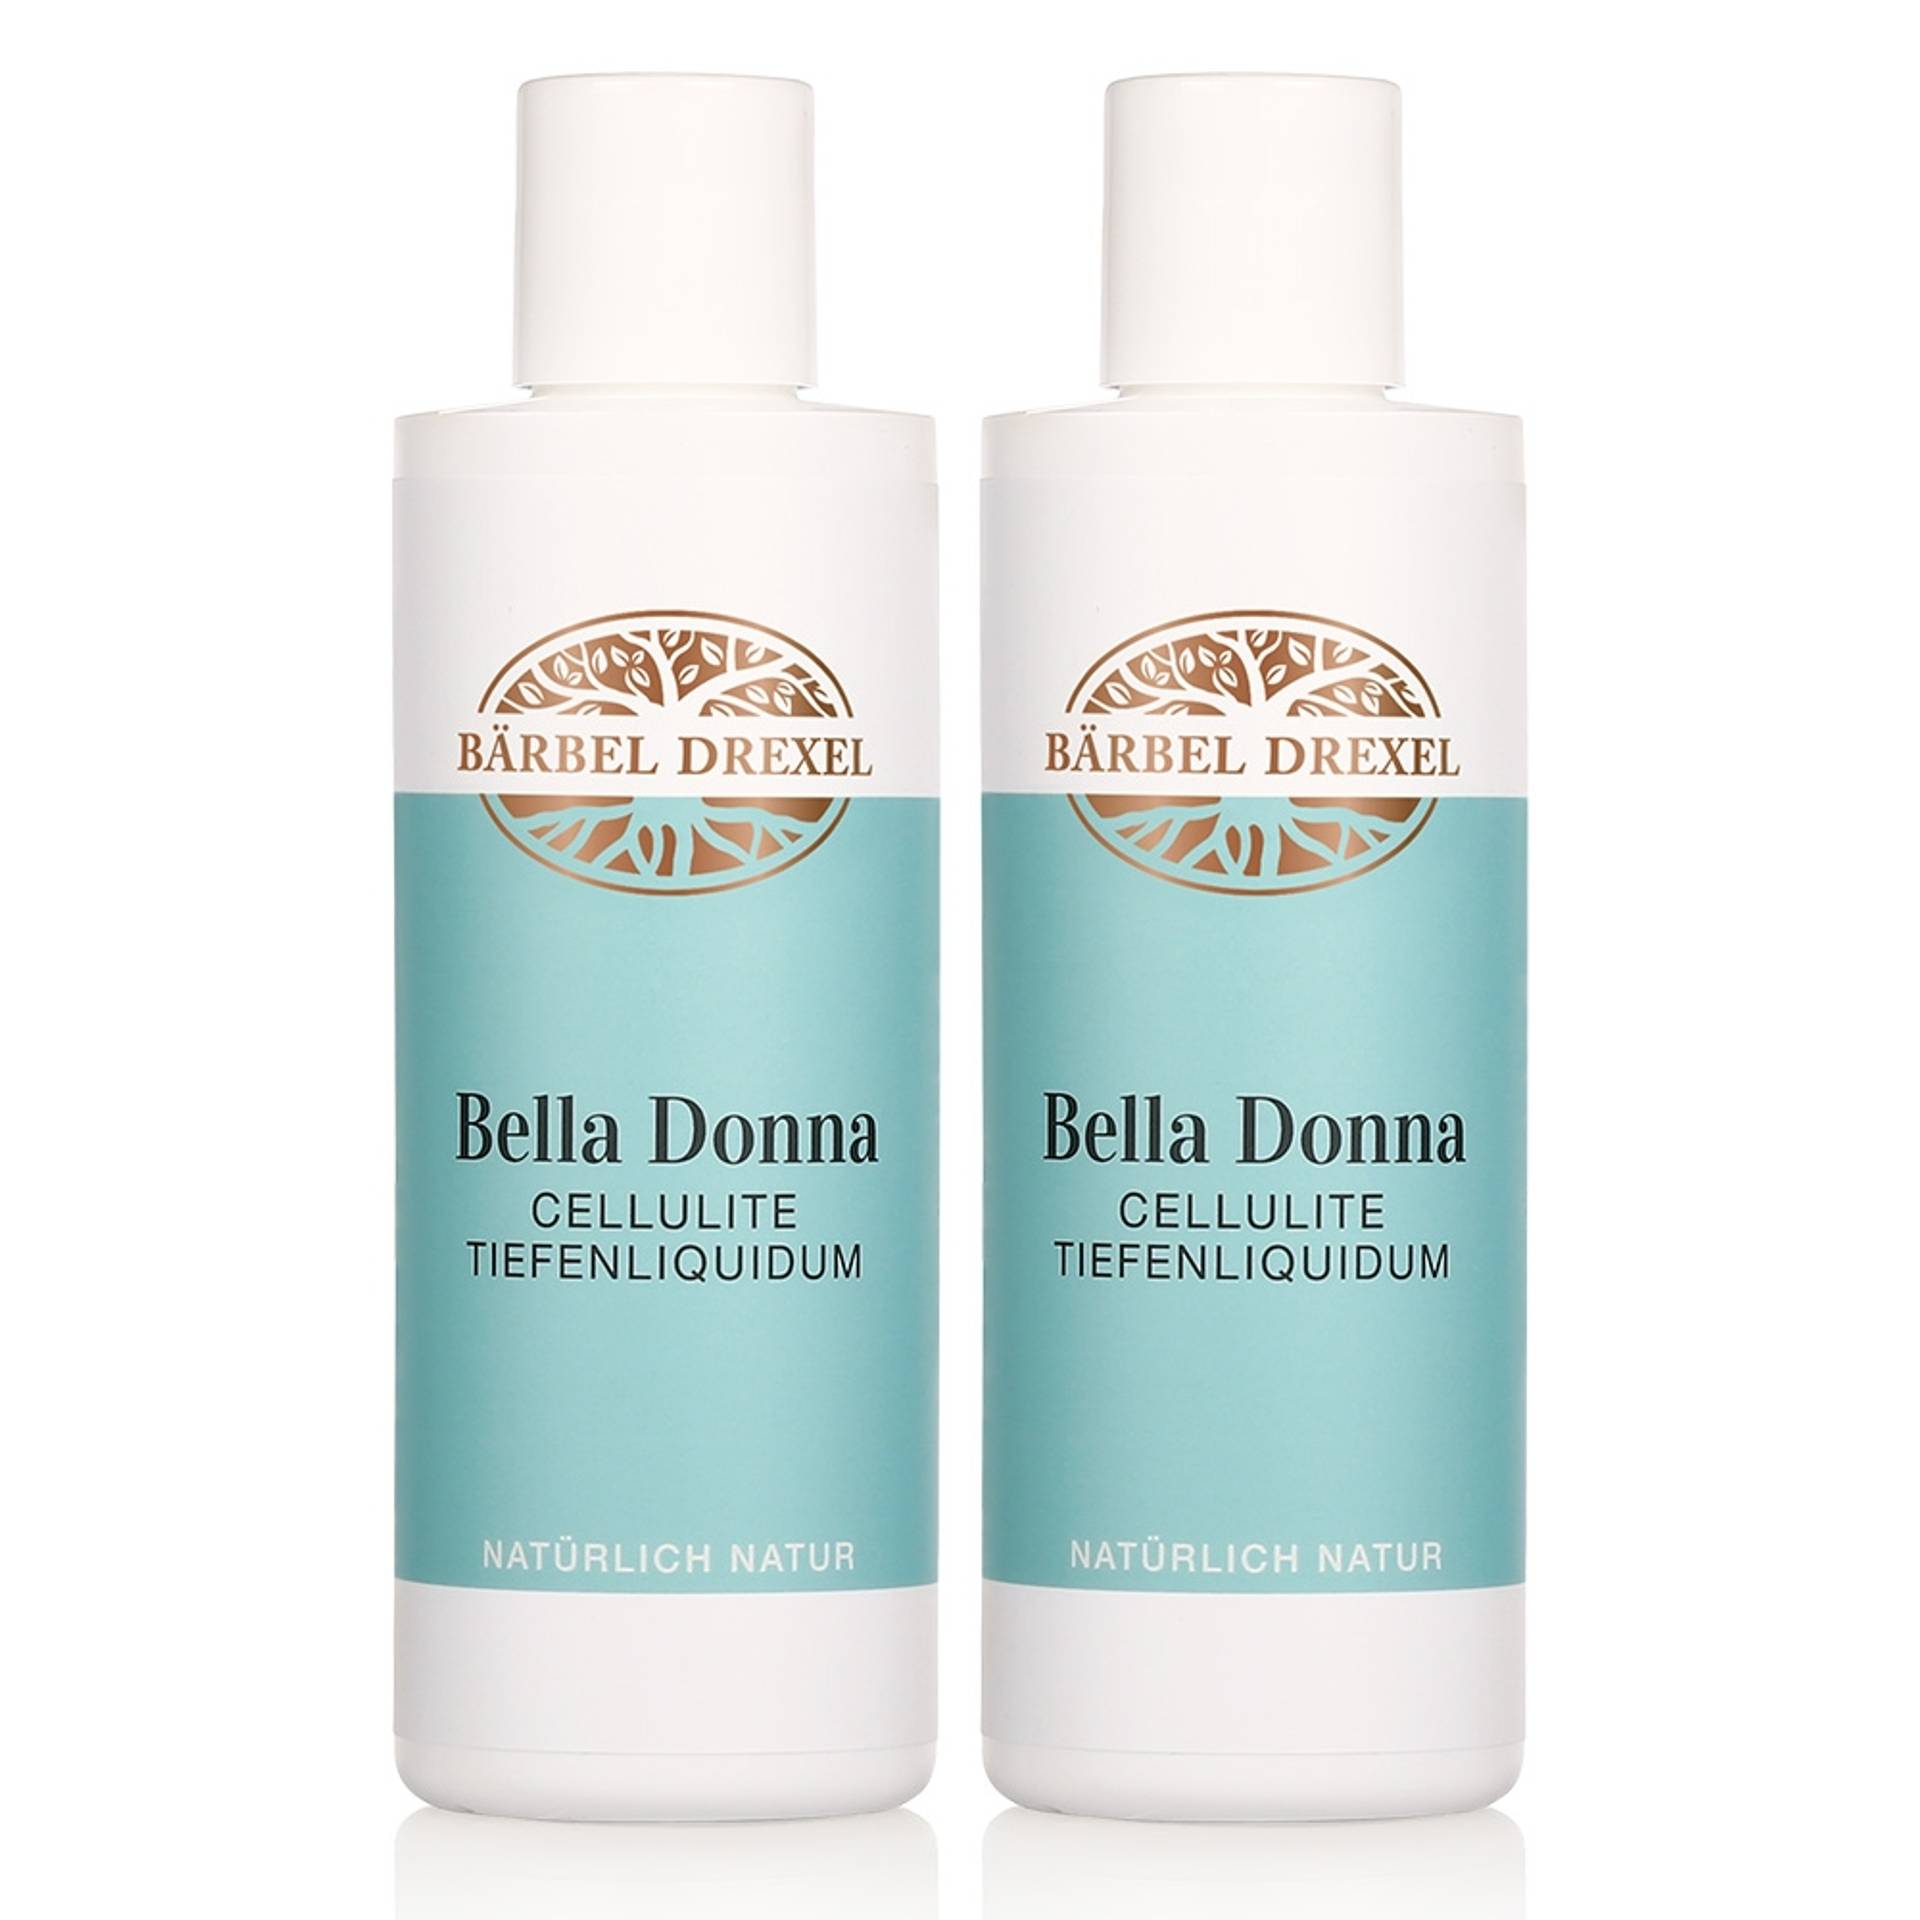 Duo Bella Donna Cellulite Tiefenliquidum, 2 x 200ml